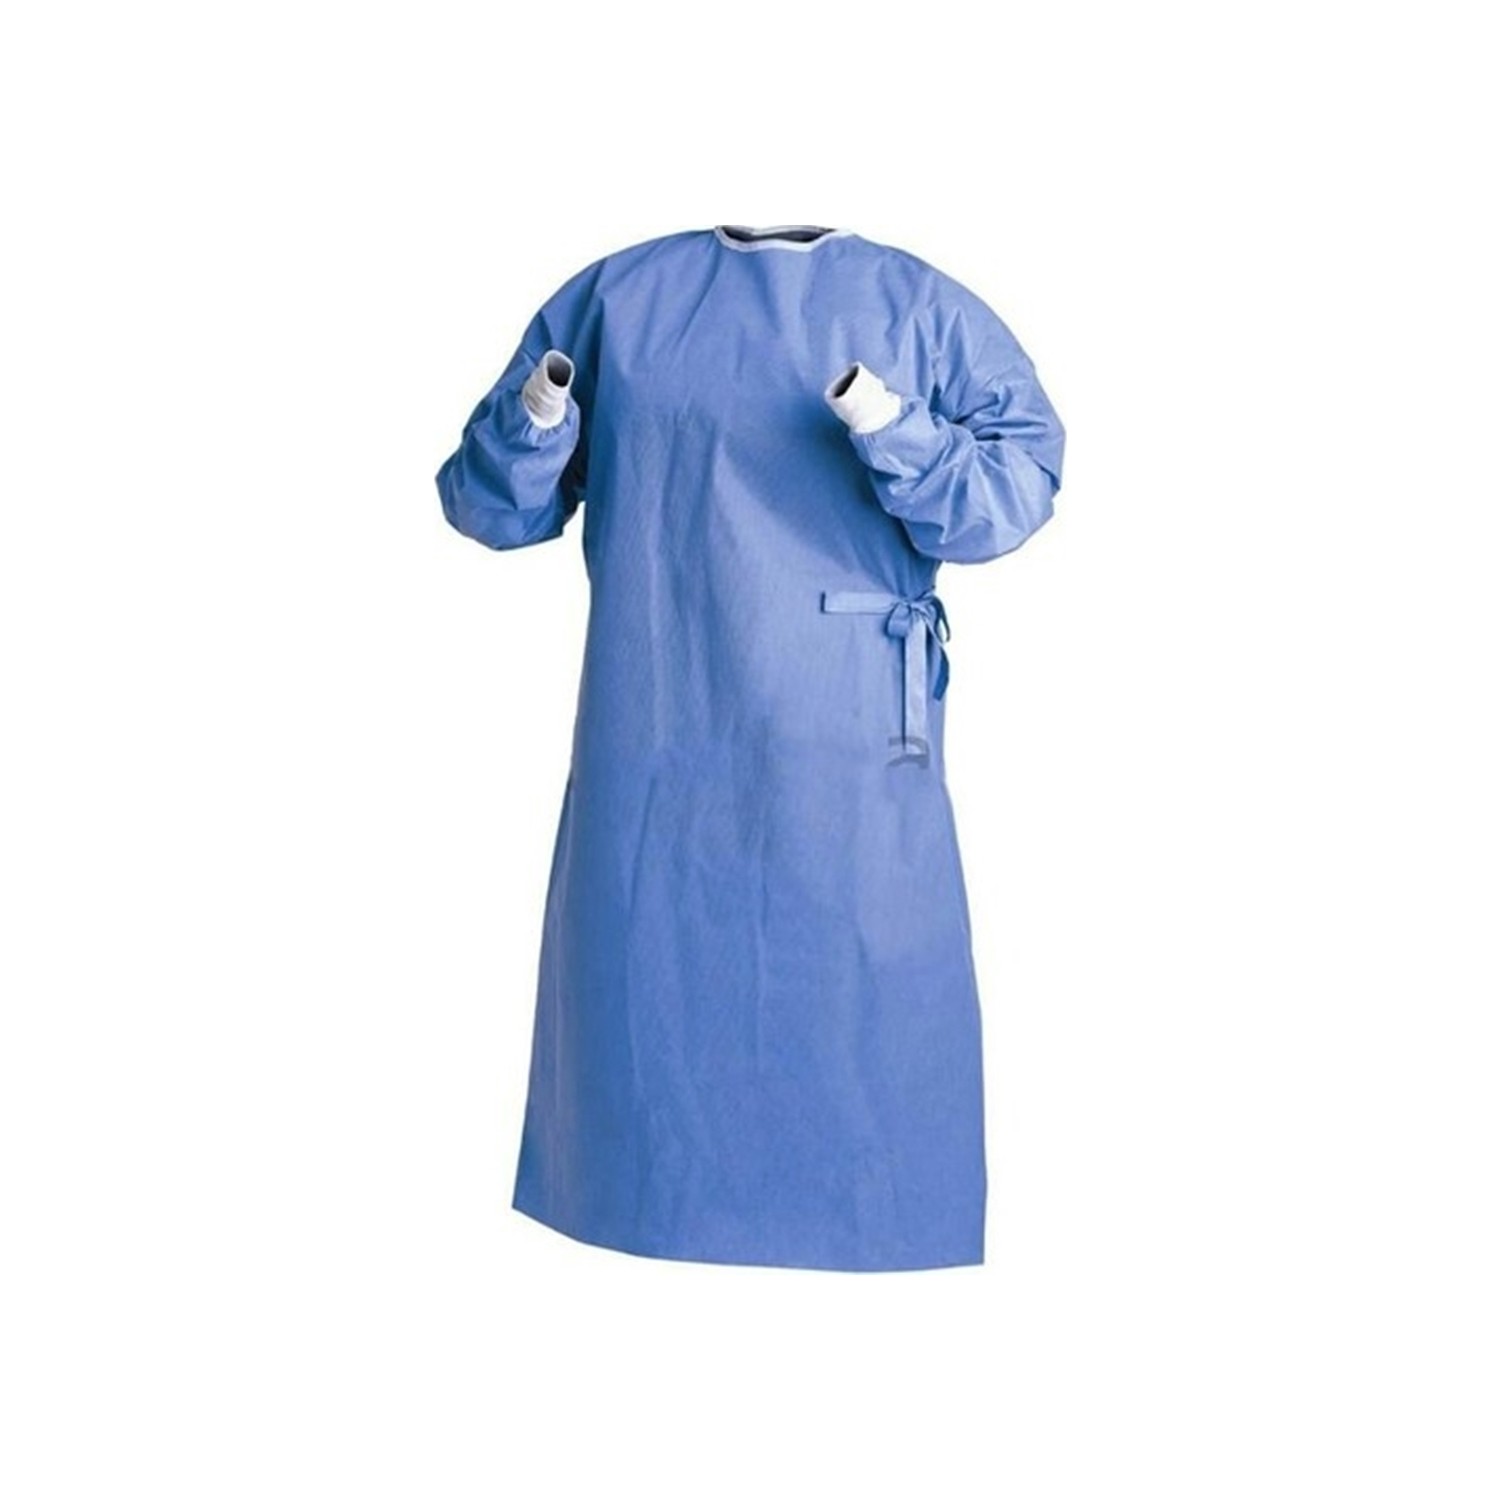 Cerrahi Önlük Tek Kullanımlık Kemerli Mavi